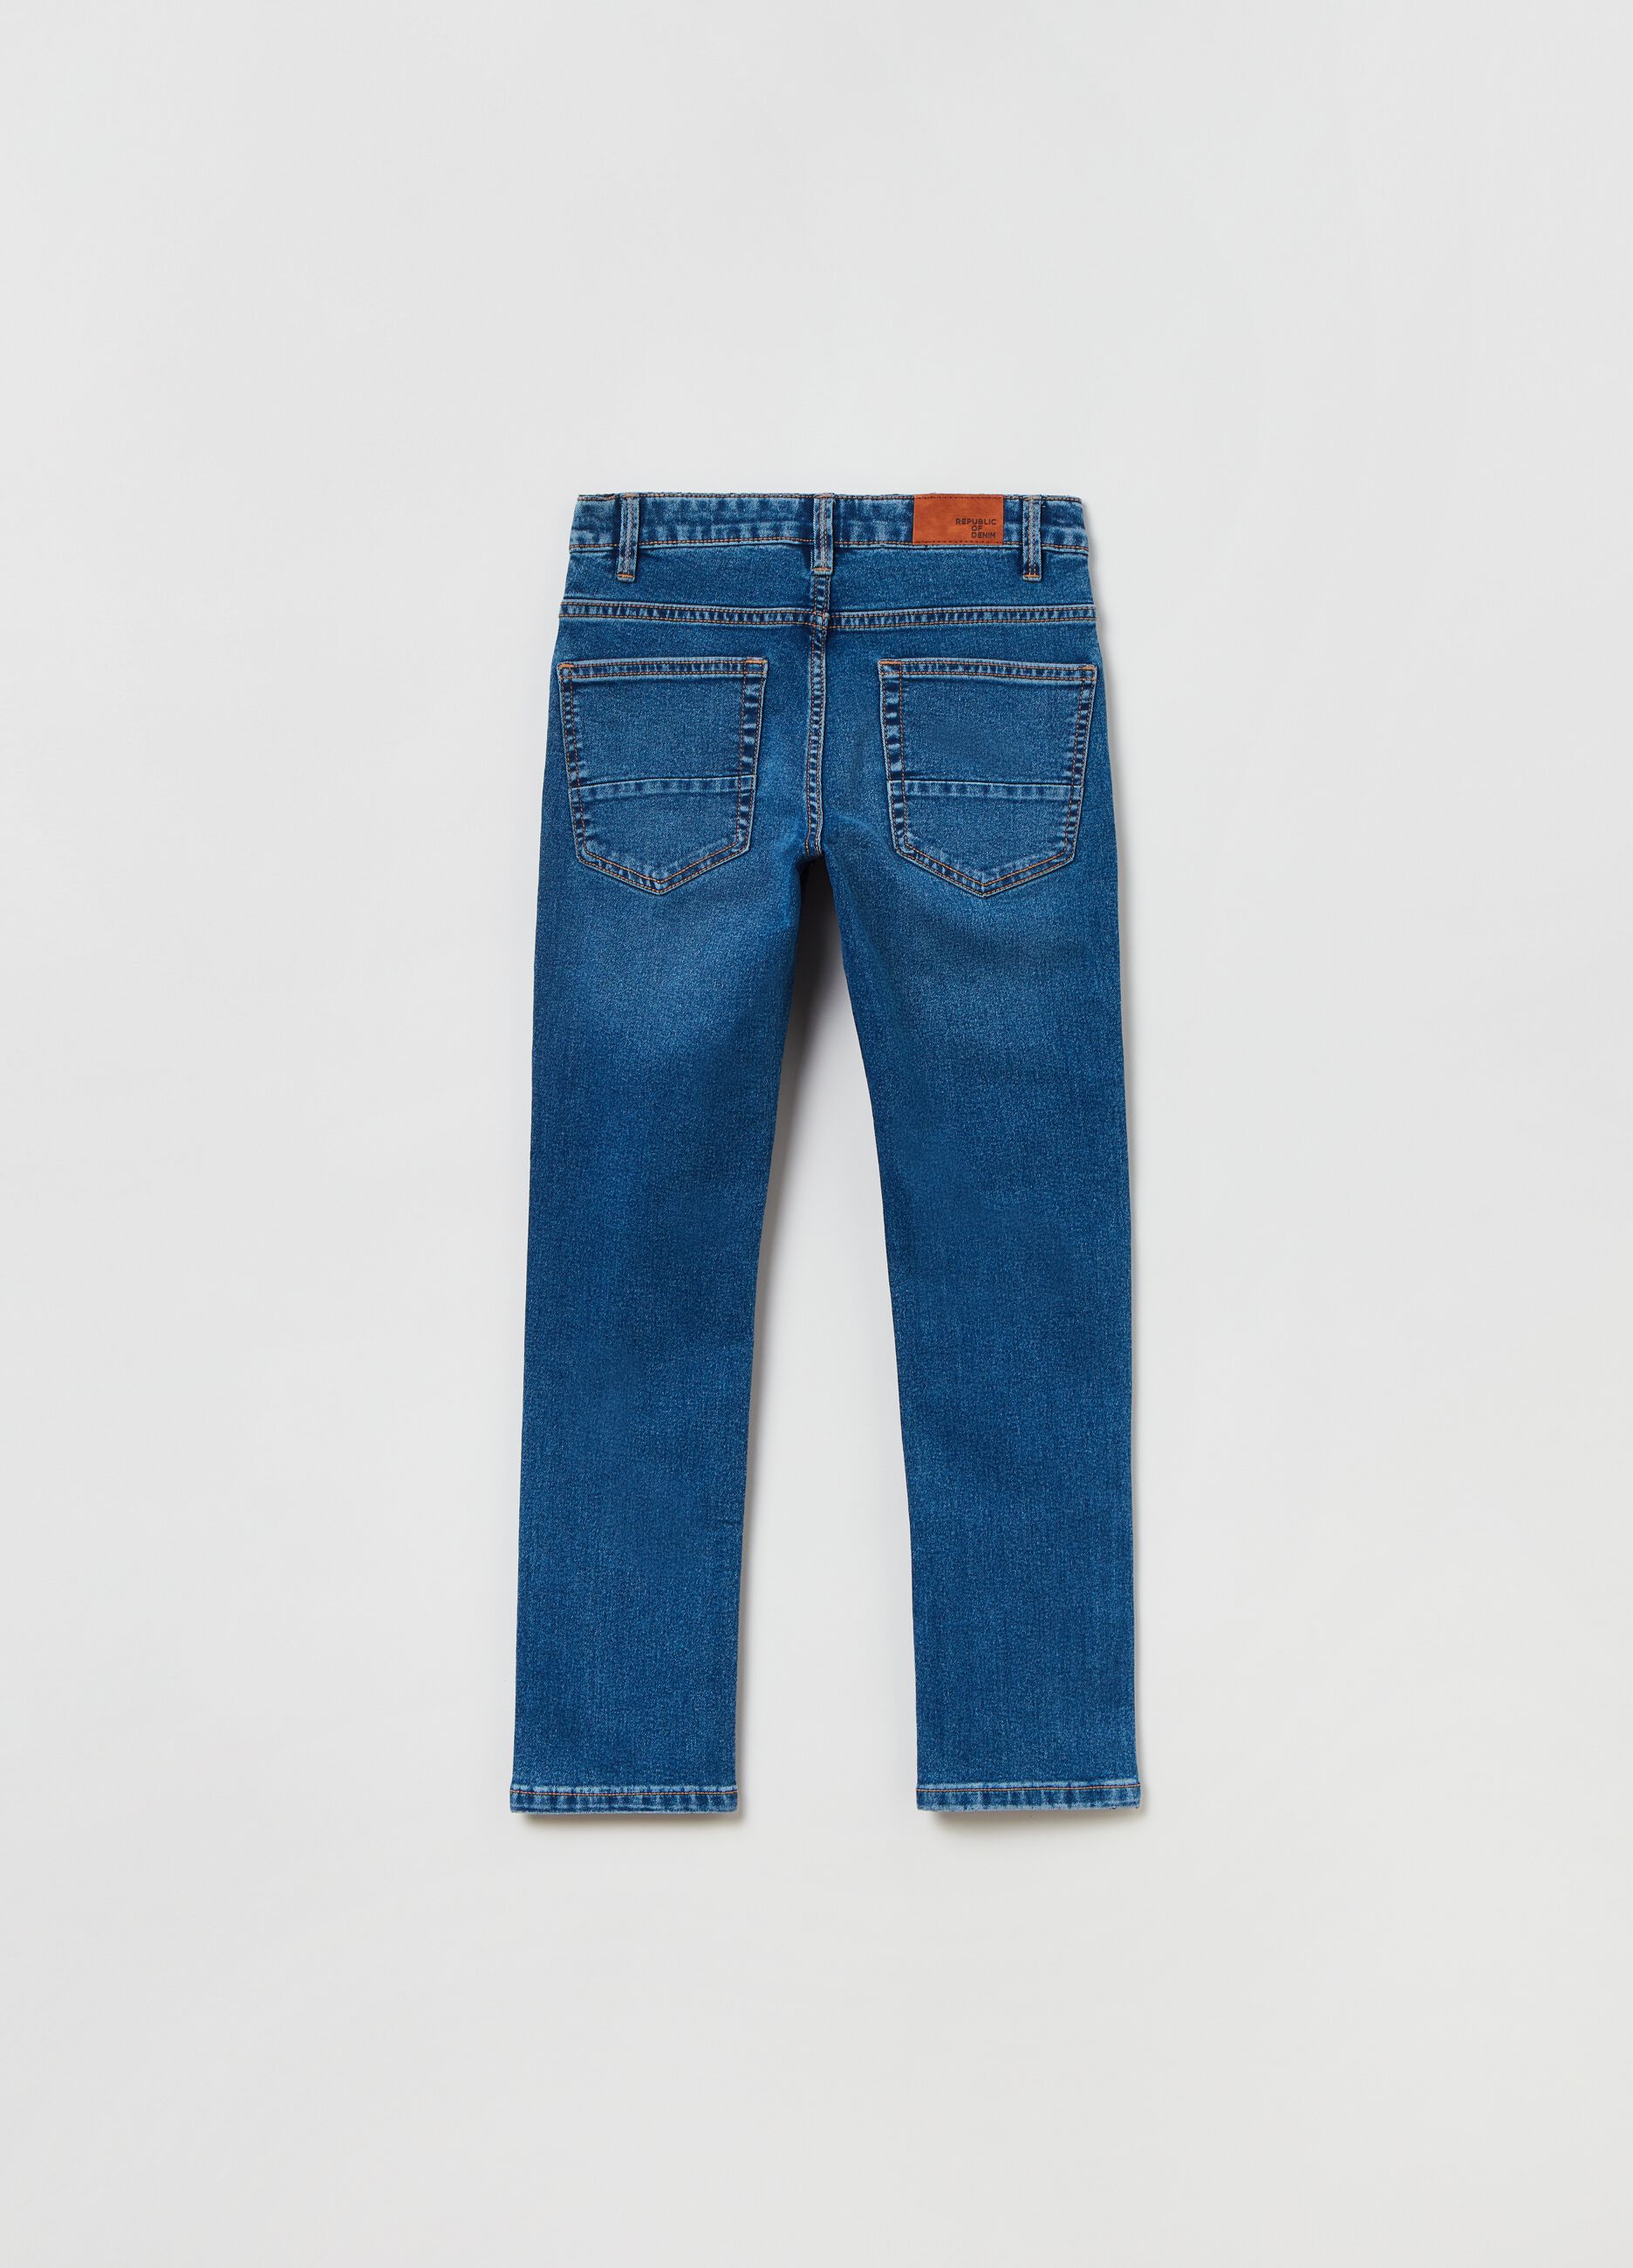 5-pocket, regular fit jeans._1